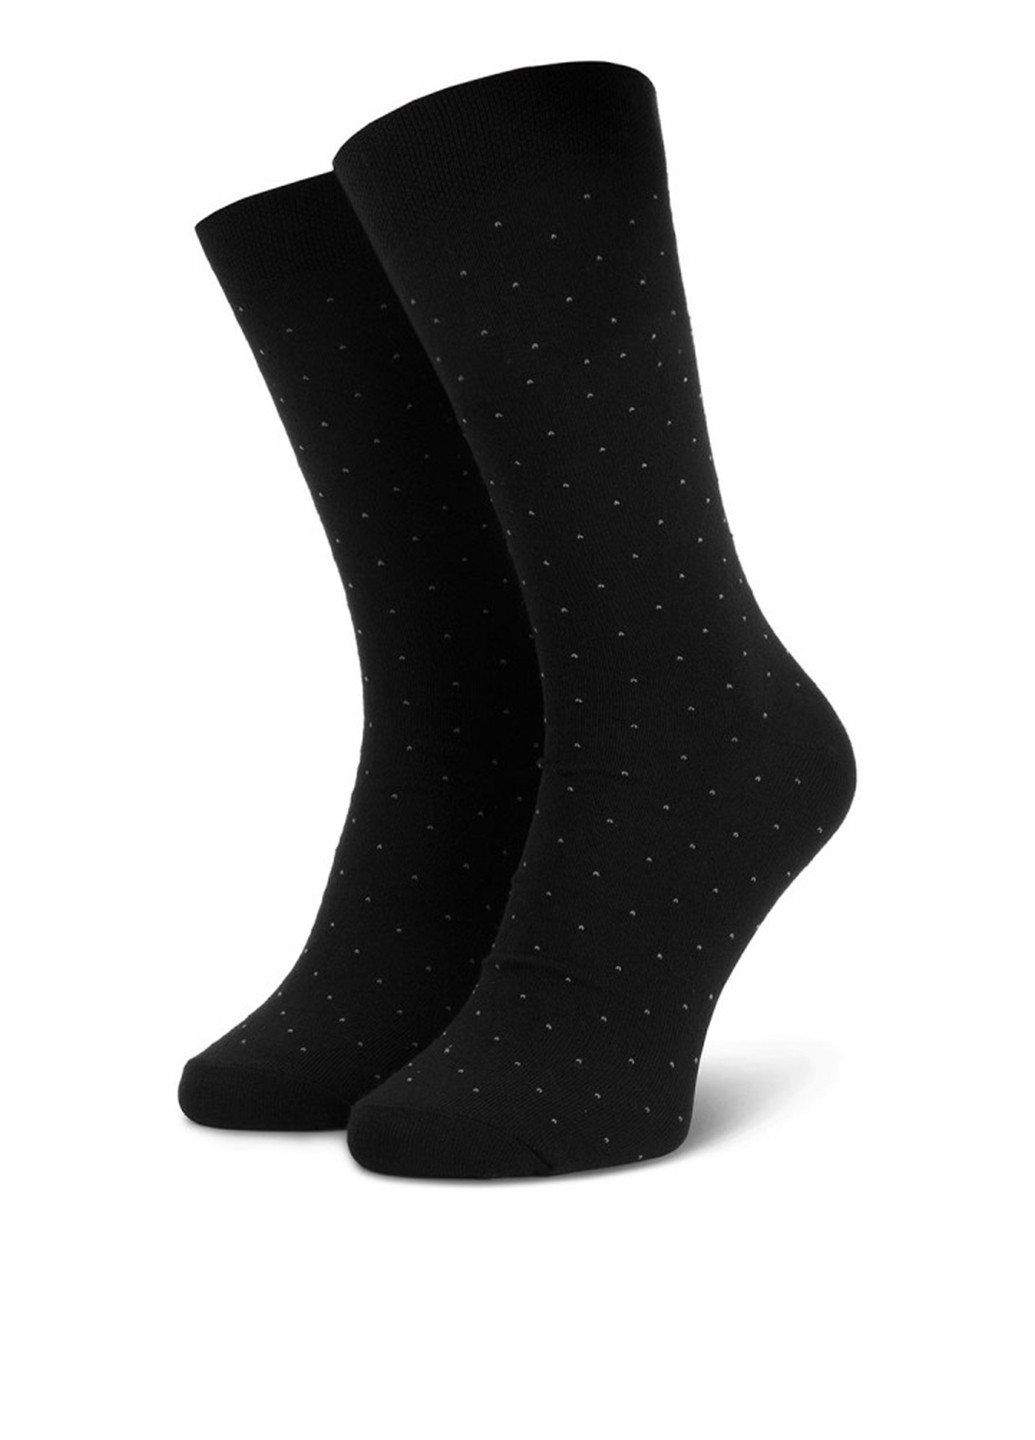 Шкарпетки чоловічі SKARPETY WIZYTOWE (KROPKI) 45-47 Lasocki SKARPETY WIZYTOWE (KROPKI горошки чёрные повседневные